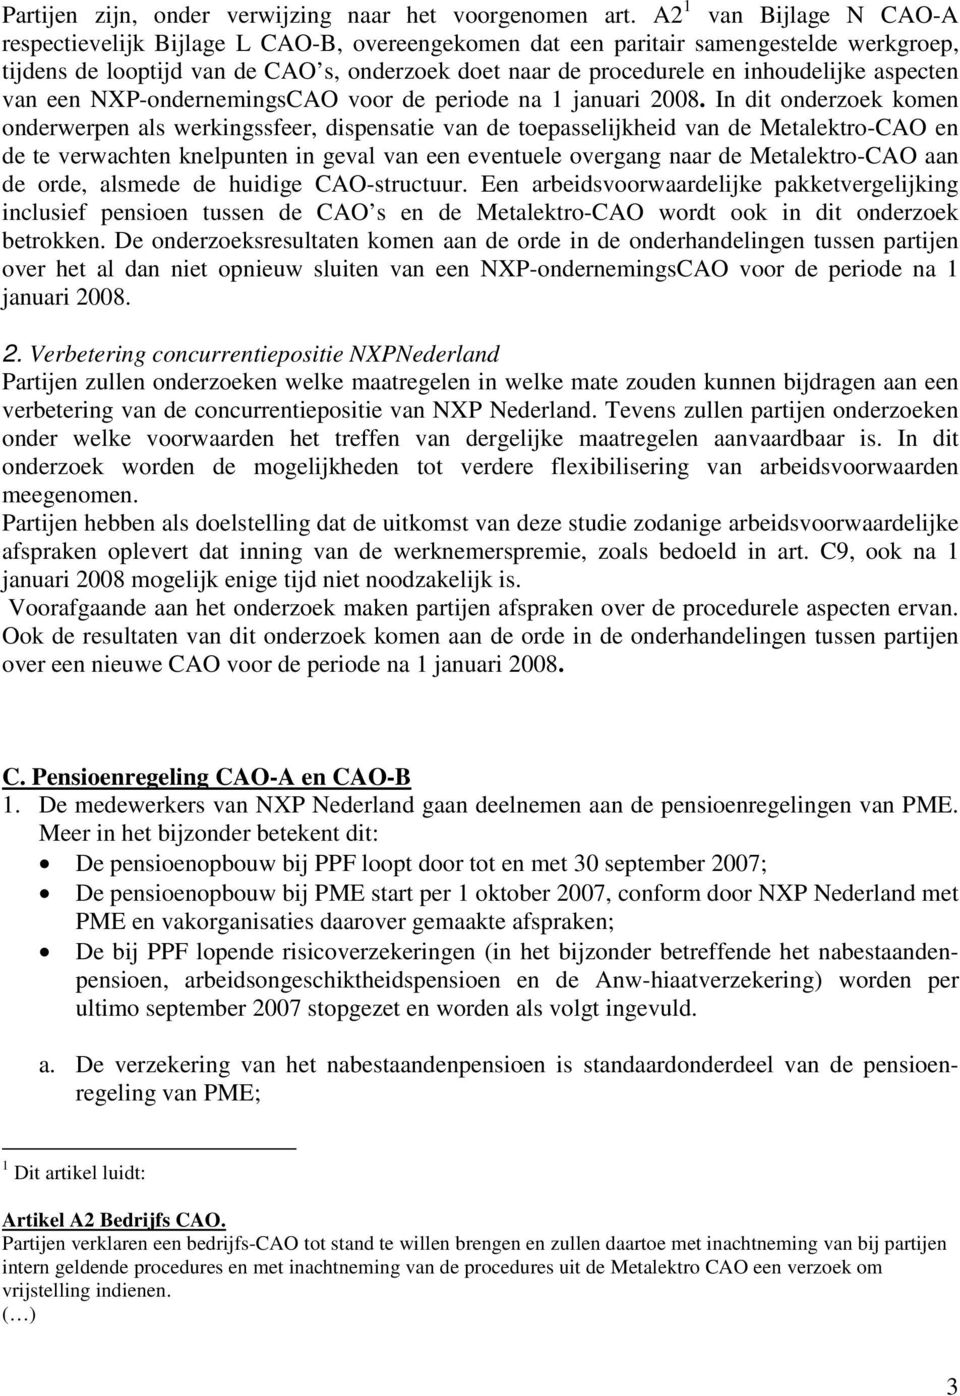 aspecten van een NXP-ondernemingsCAO voor de periode na 1 januari 2008.